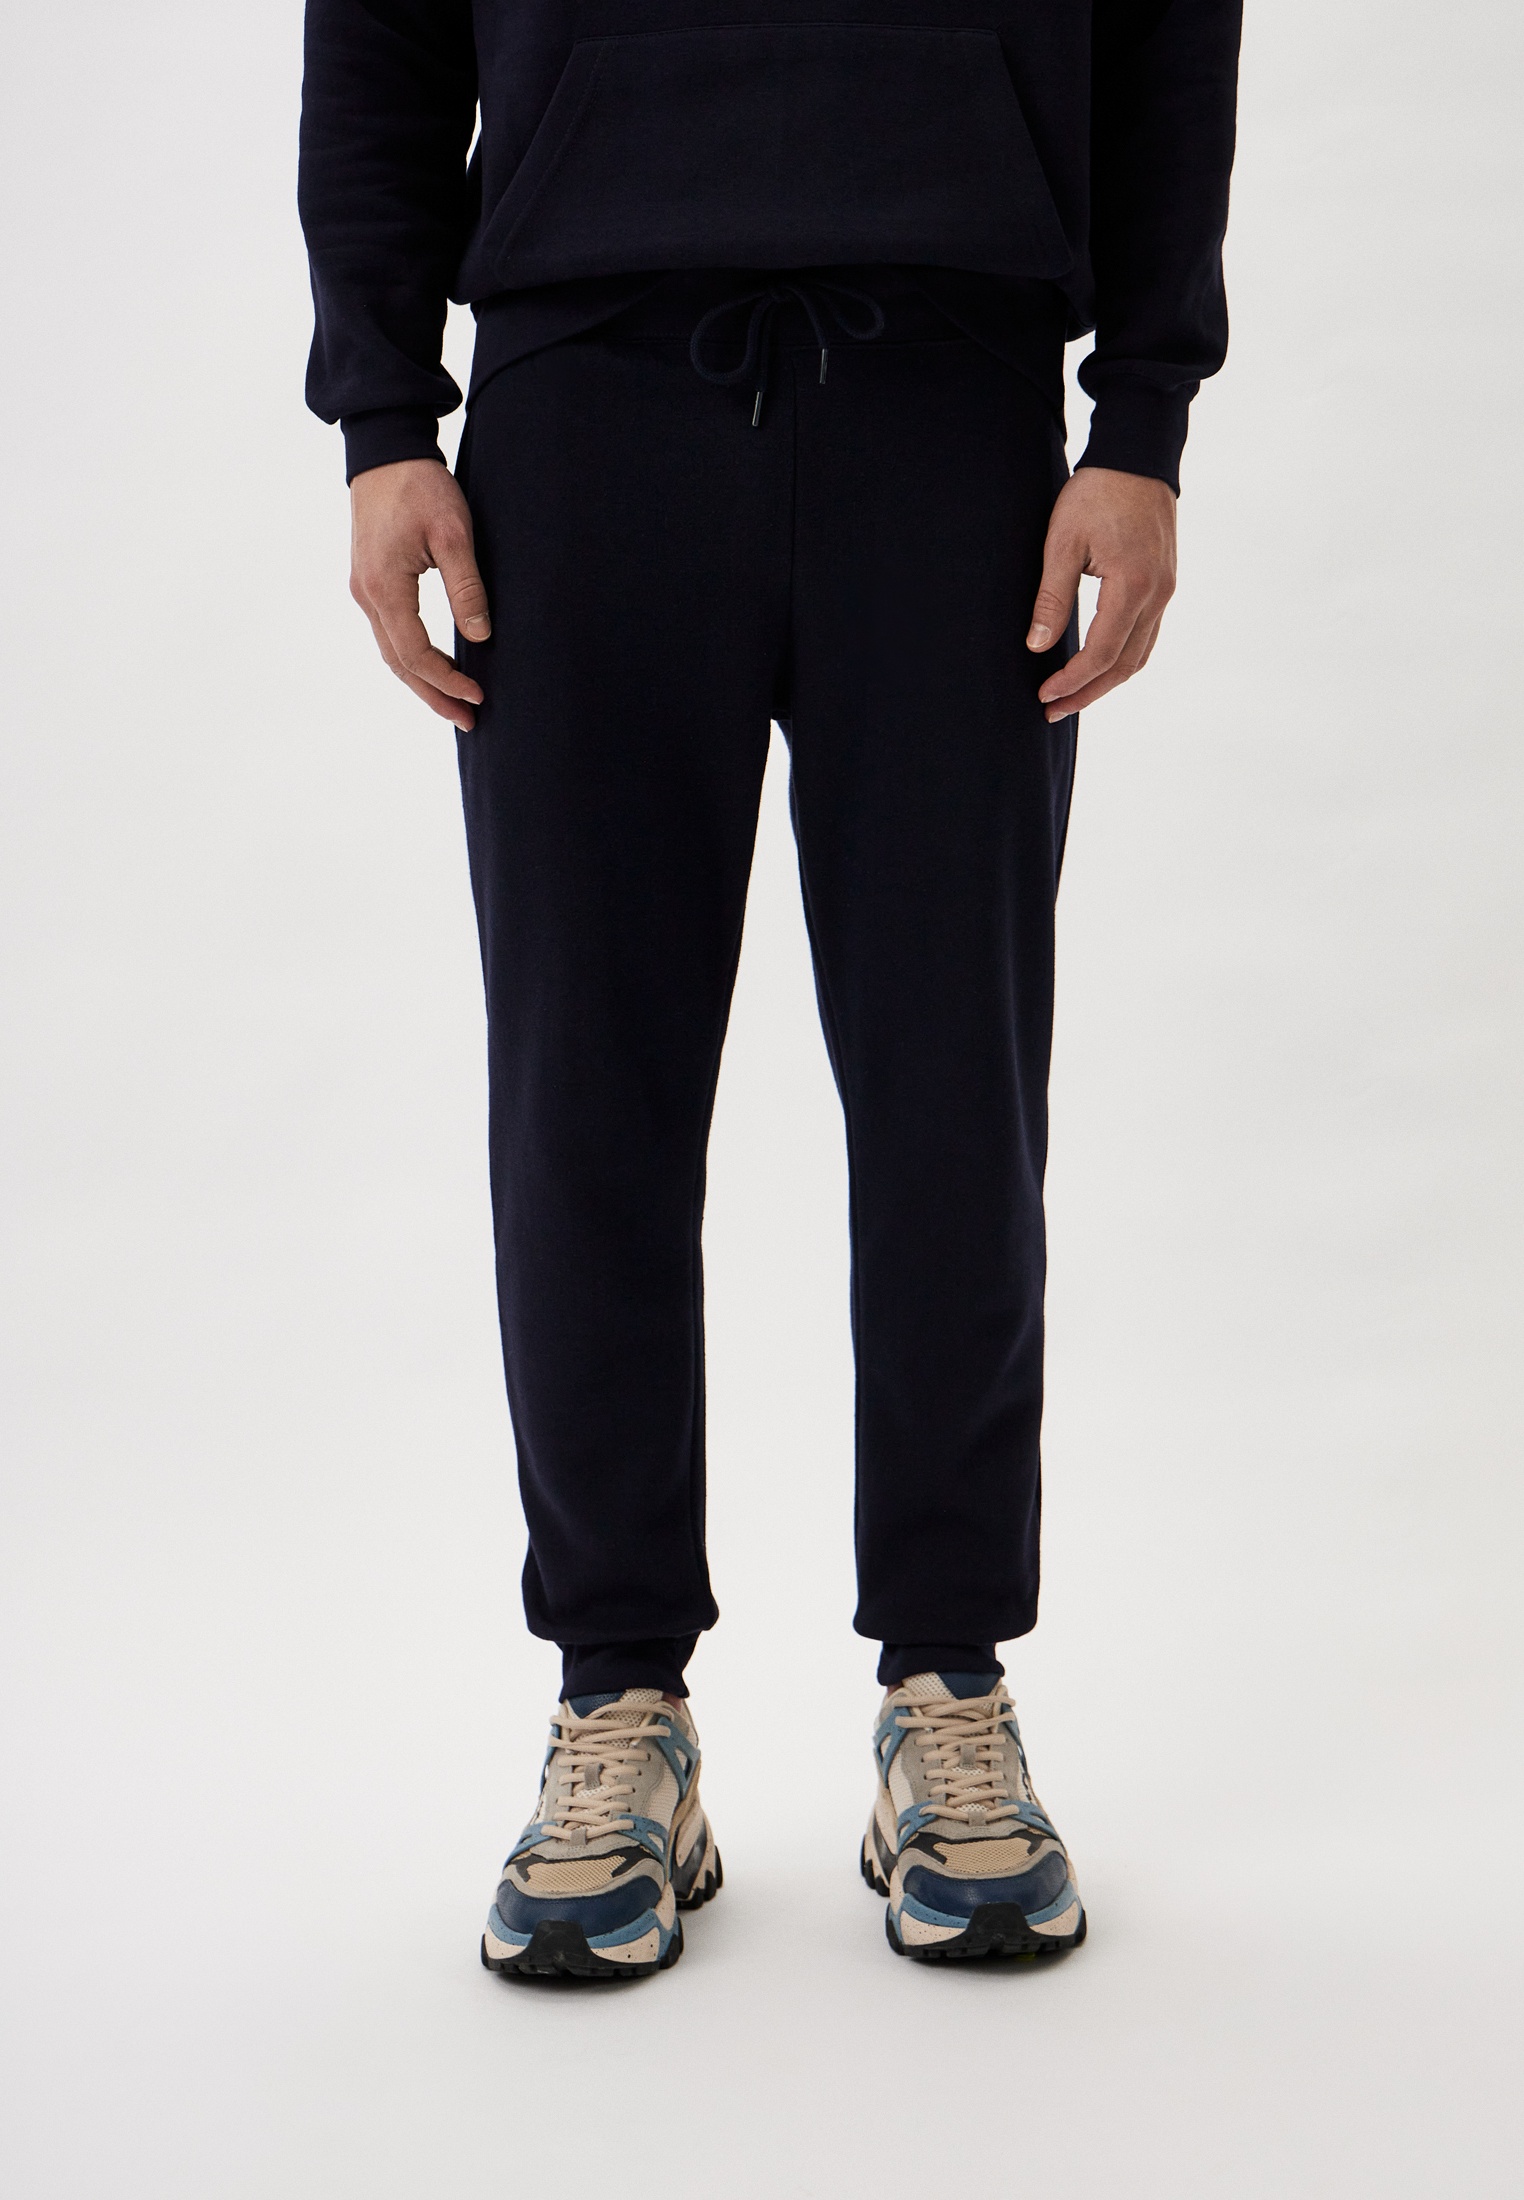 Мужские спортивные брюки Baldinini (Балдинини) B-OLM-M008: изображение 1